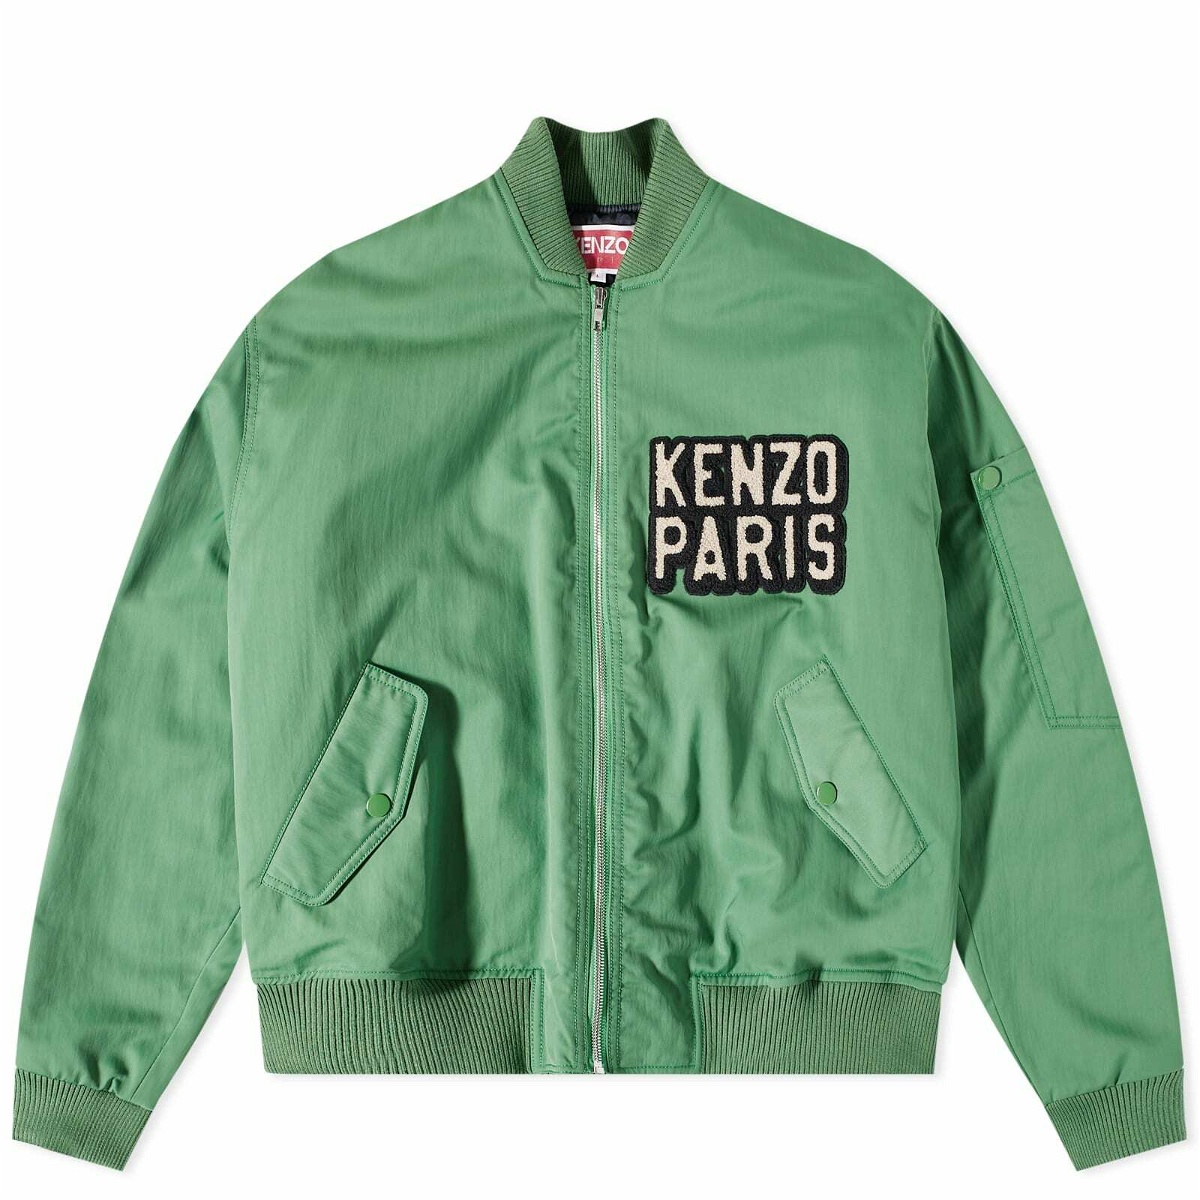 Kenzo Paris Men's Ken Zo Elevated Flight Bomber Jacket in Grass Green Kenzo